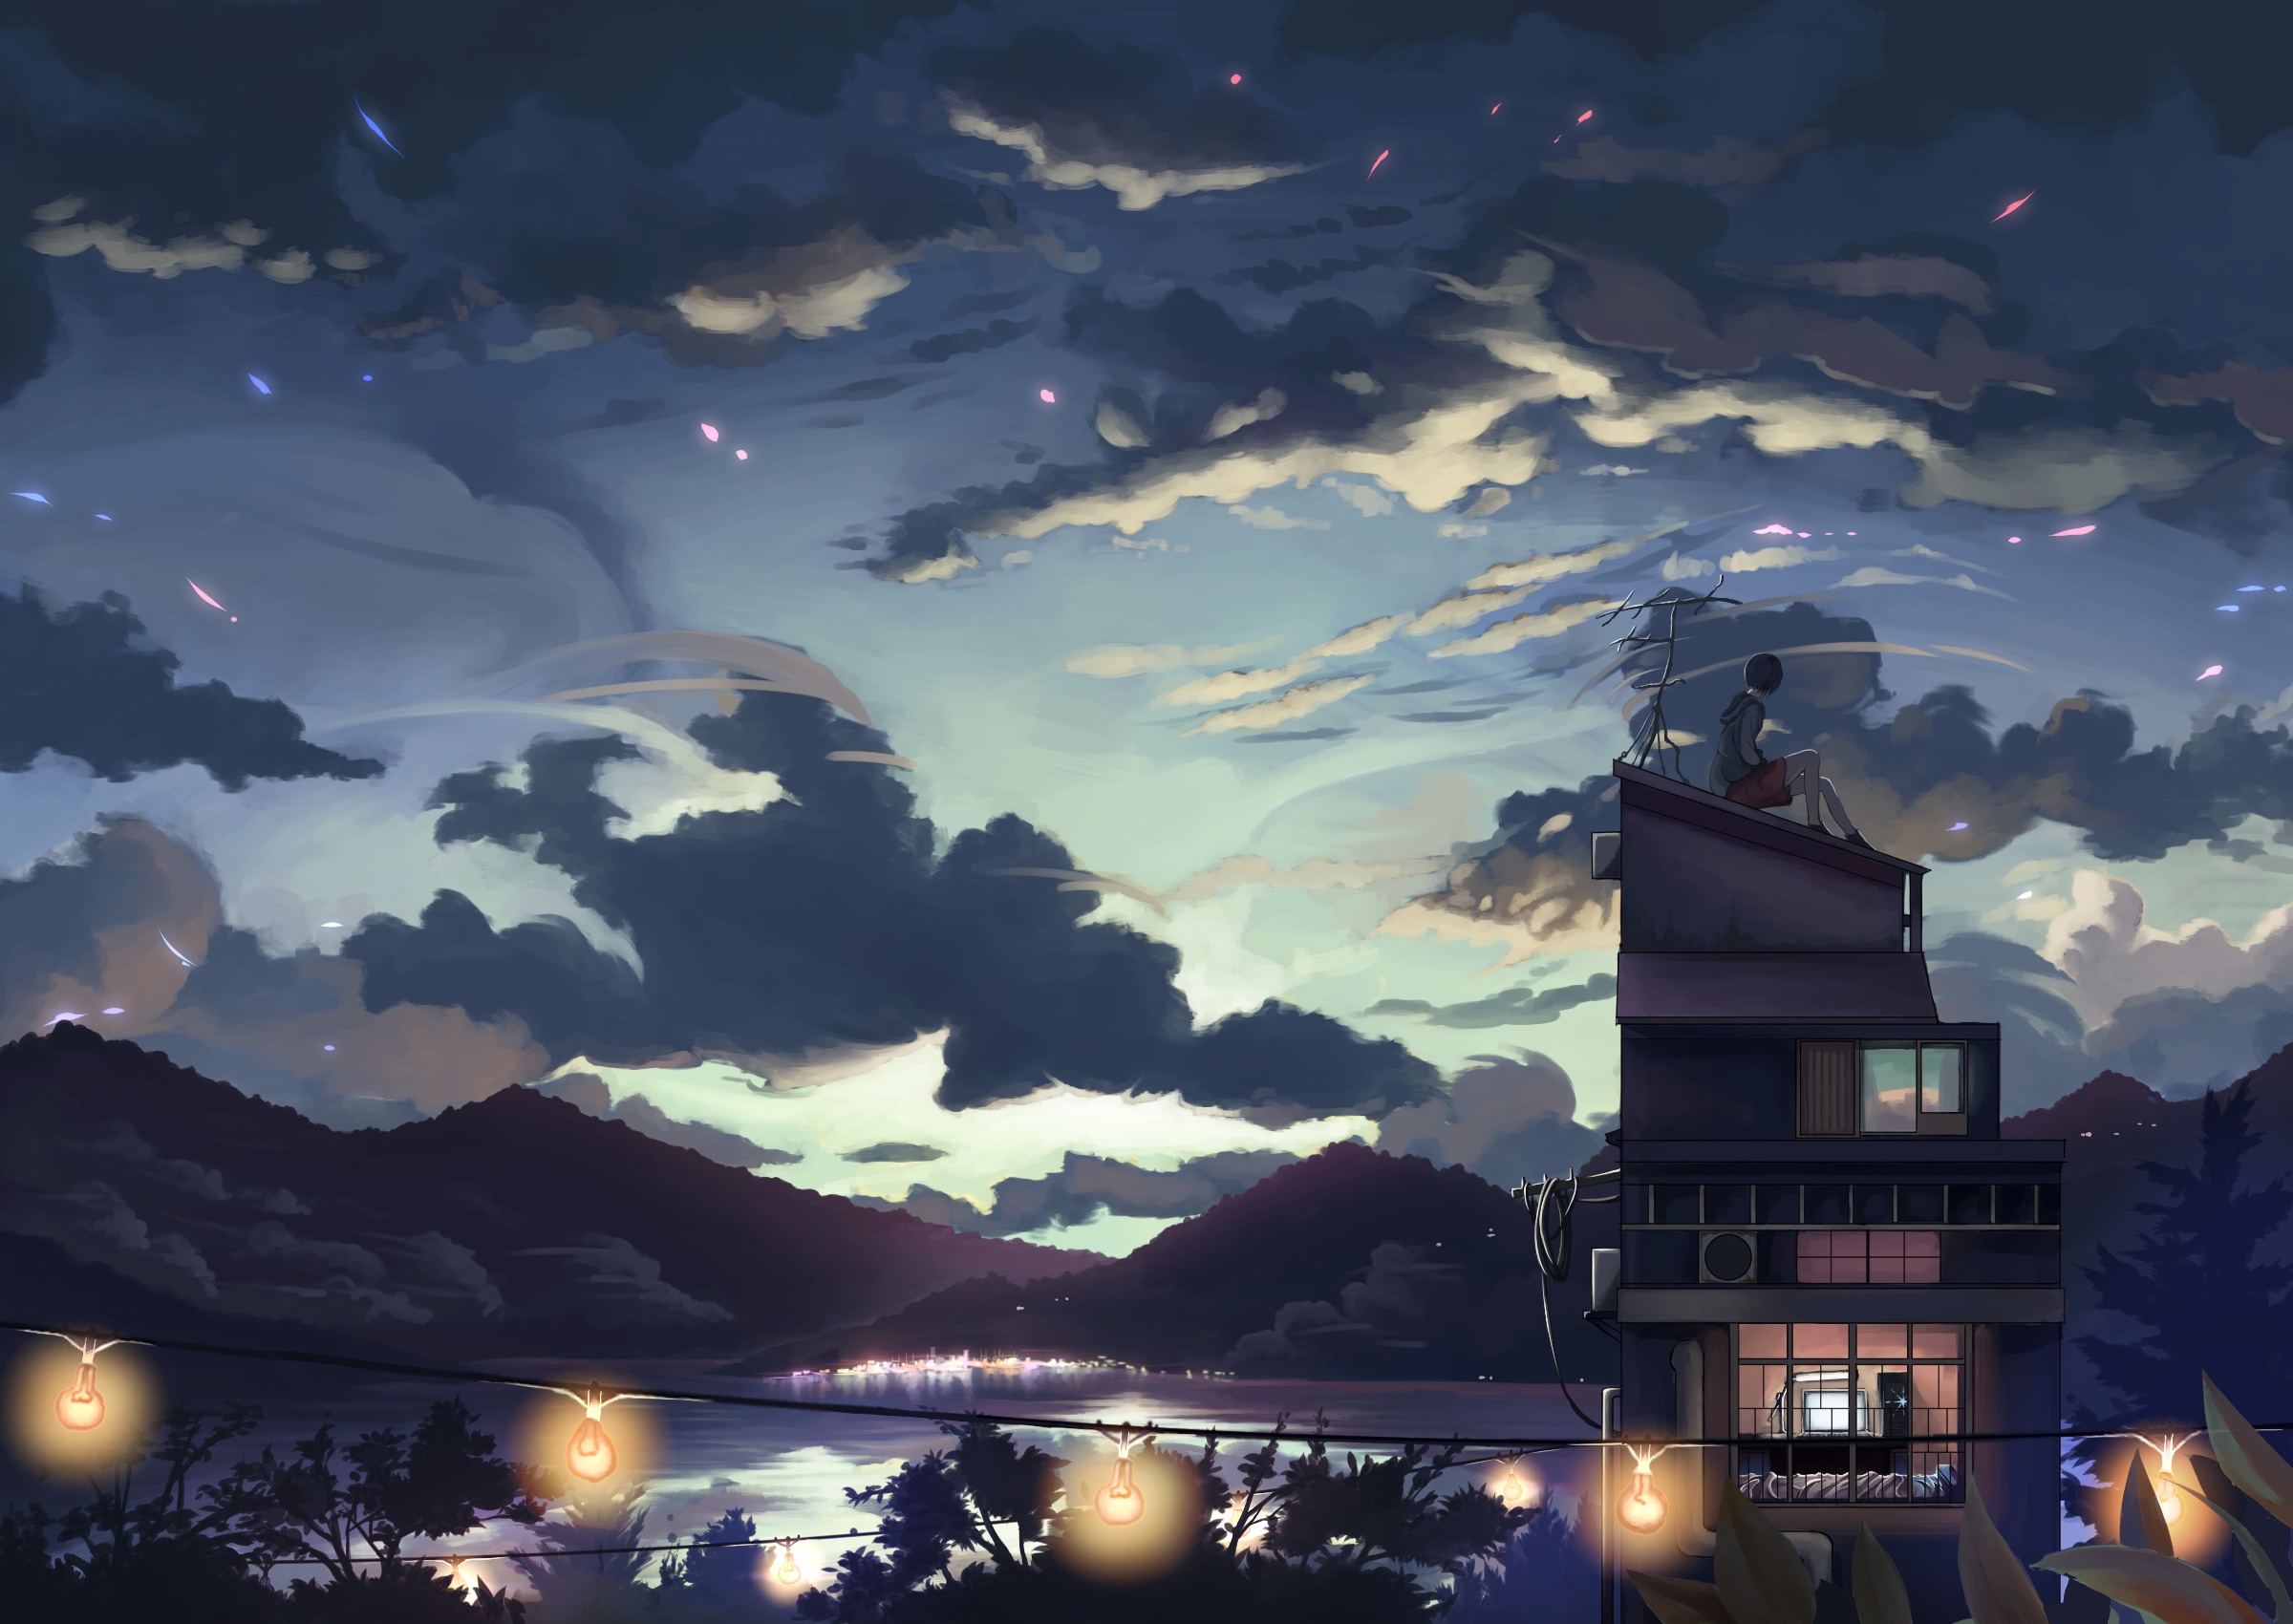 Anime House HD Wallpaper: Những bức hình nền Anime House HD Wallpaper được thiết kế một cách chi tiết và sắc nét sẽ mang đến cho bạn cảm giác như đang thực sự sống trong thế giới ảo của những nhân vật anime. Hãy cùng xả stress và khám phá không gian sống mơ ước này nào.